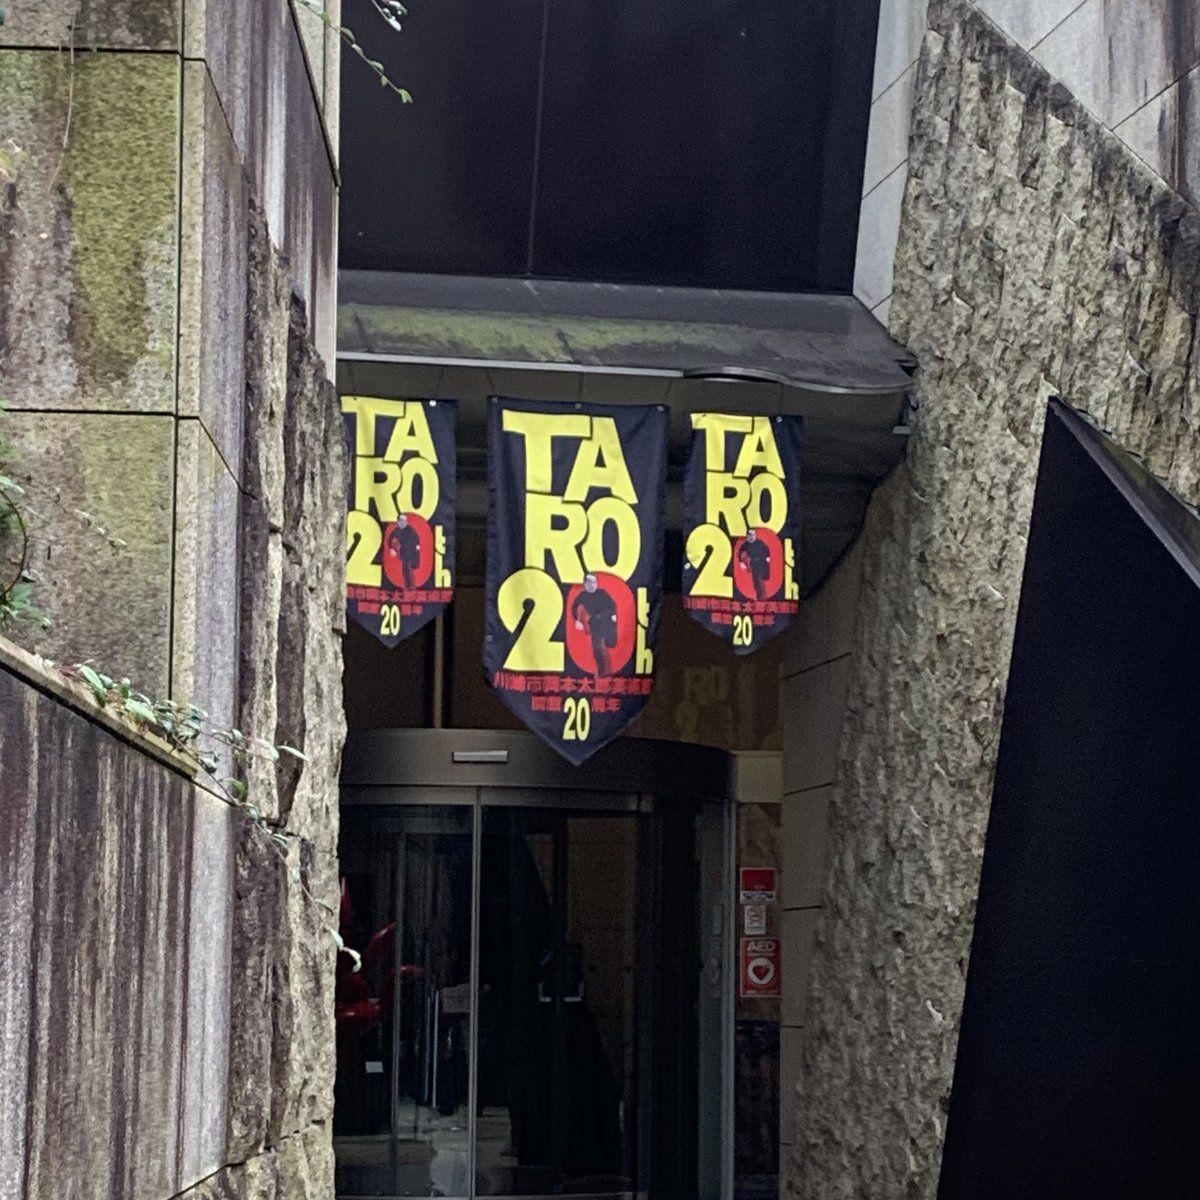 川崎市岡本太郎美術館、祝・20周年。
20周年記念展、面白かったなー。
展示みた後はもちろんTARO cafeでカルボナーラとゆずソーダいただきました。
1枚目の写真は2013年に岡本太郎美術館に来ていた時の私です。ぎゃー。
2枚目はSONGSの時。
大好きな場所です。